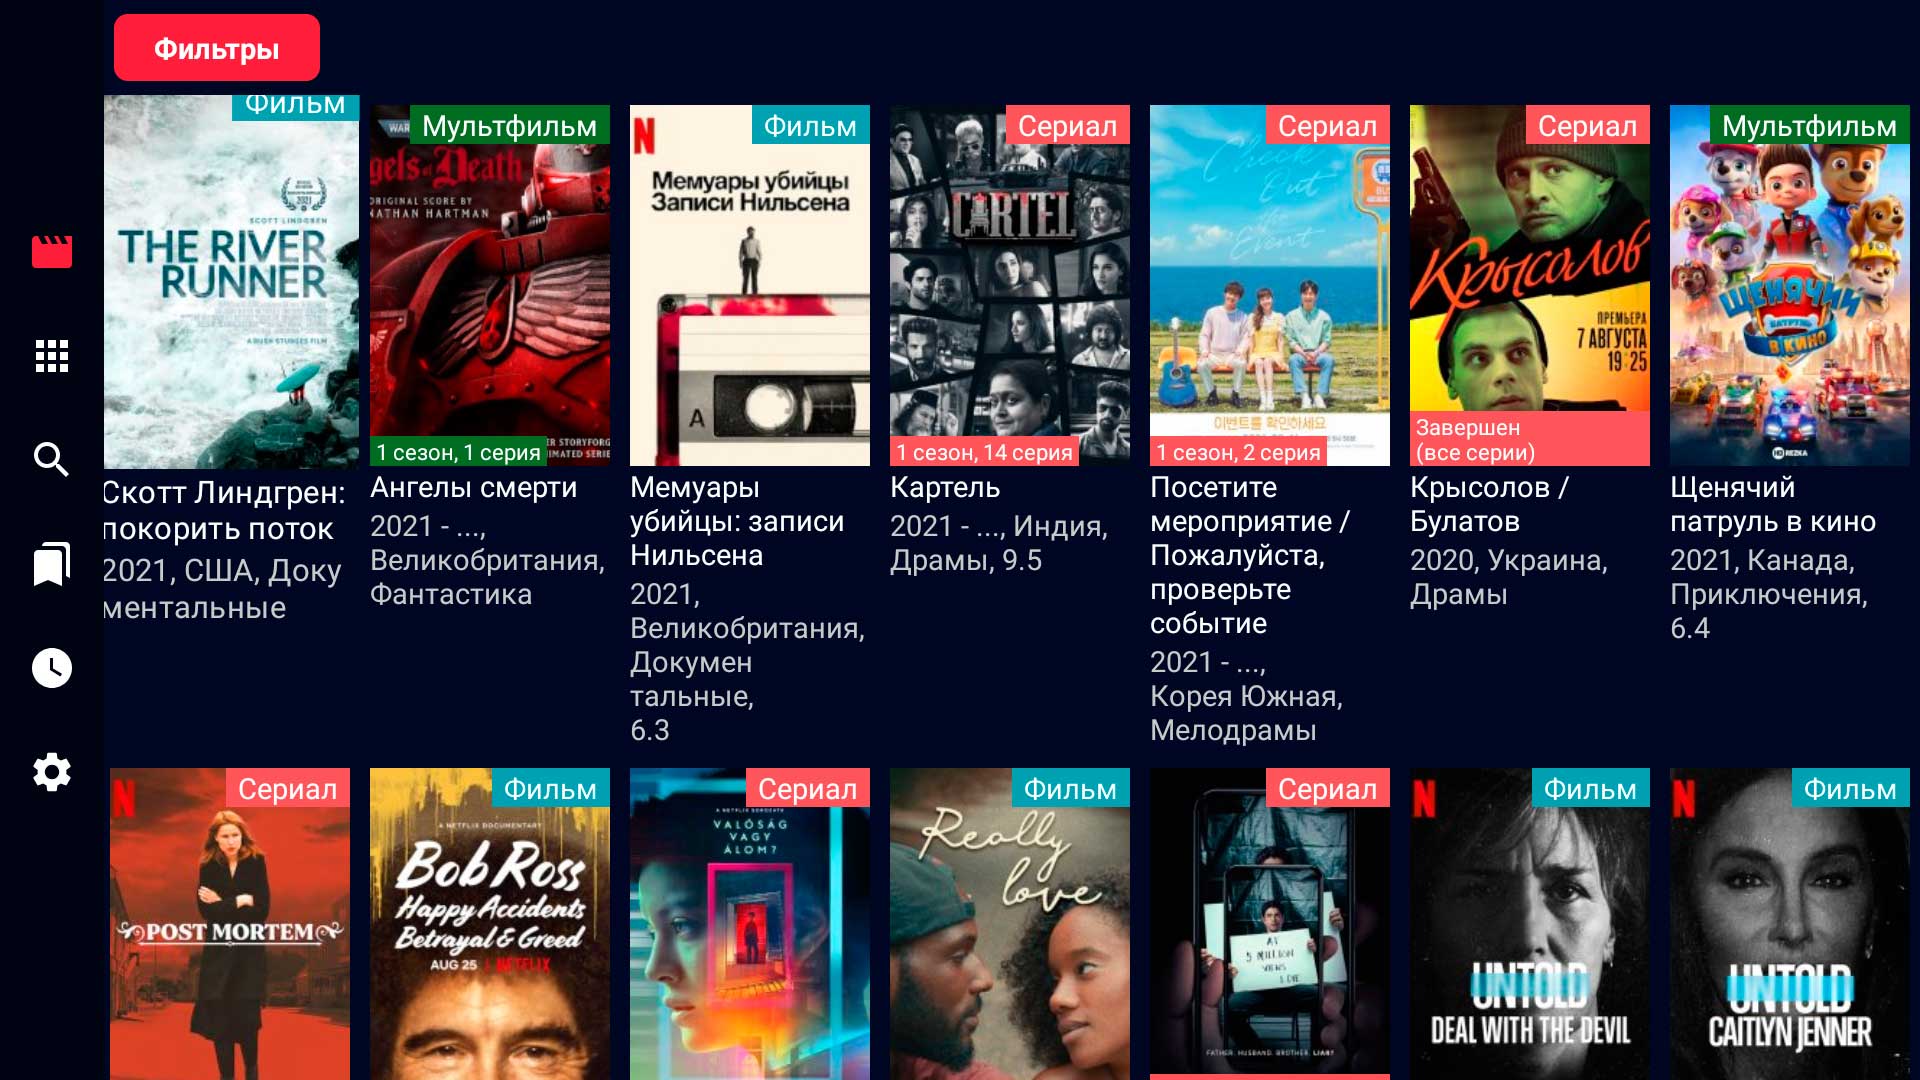 HDRezka Client для просмотра фильмов и сериалов на Андроид устройствах